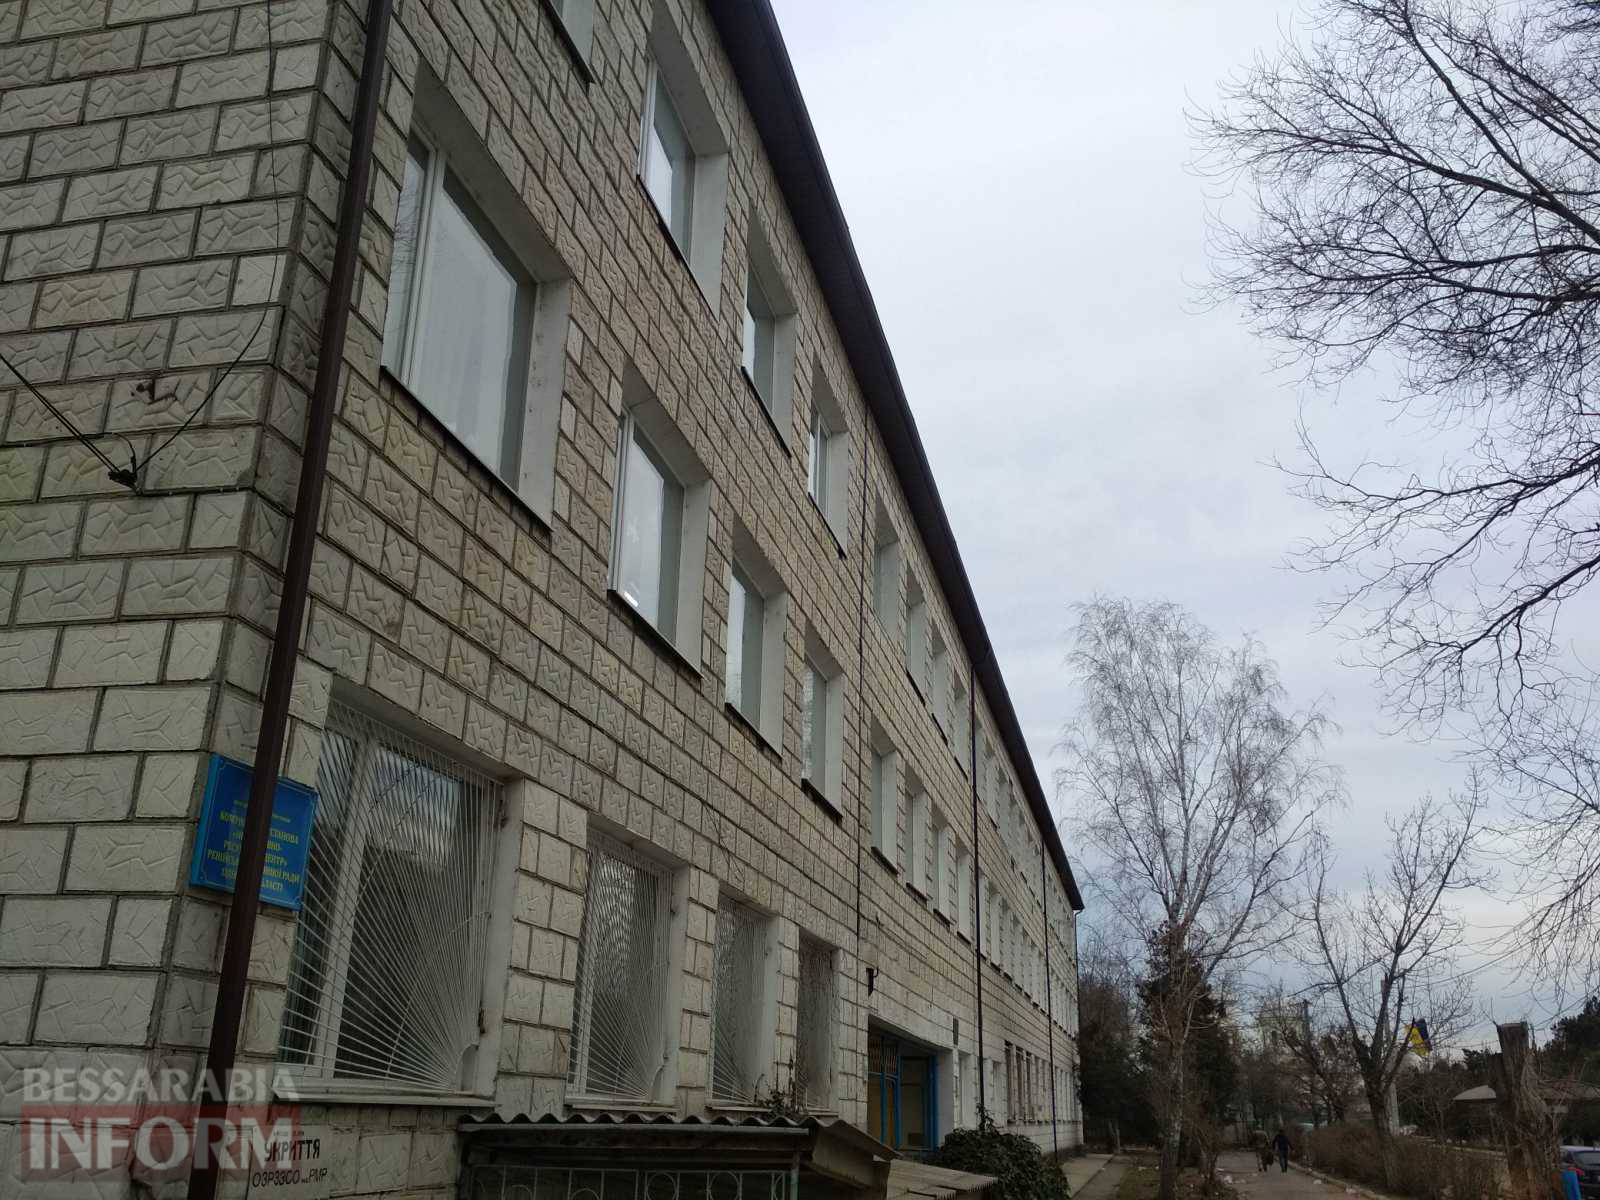 Ренийский местный бюджет профинансировал капитальный ремонт крыши опорной школы: выполнен огромный объем работ